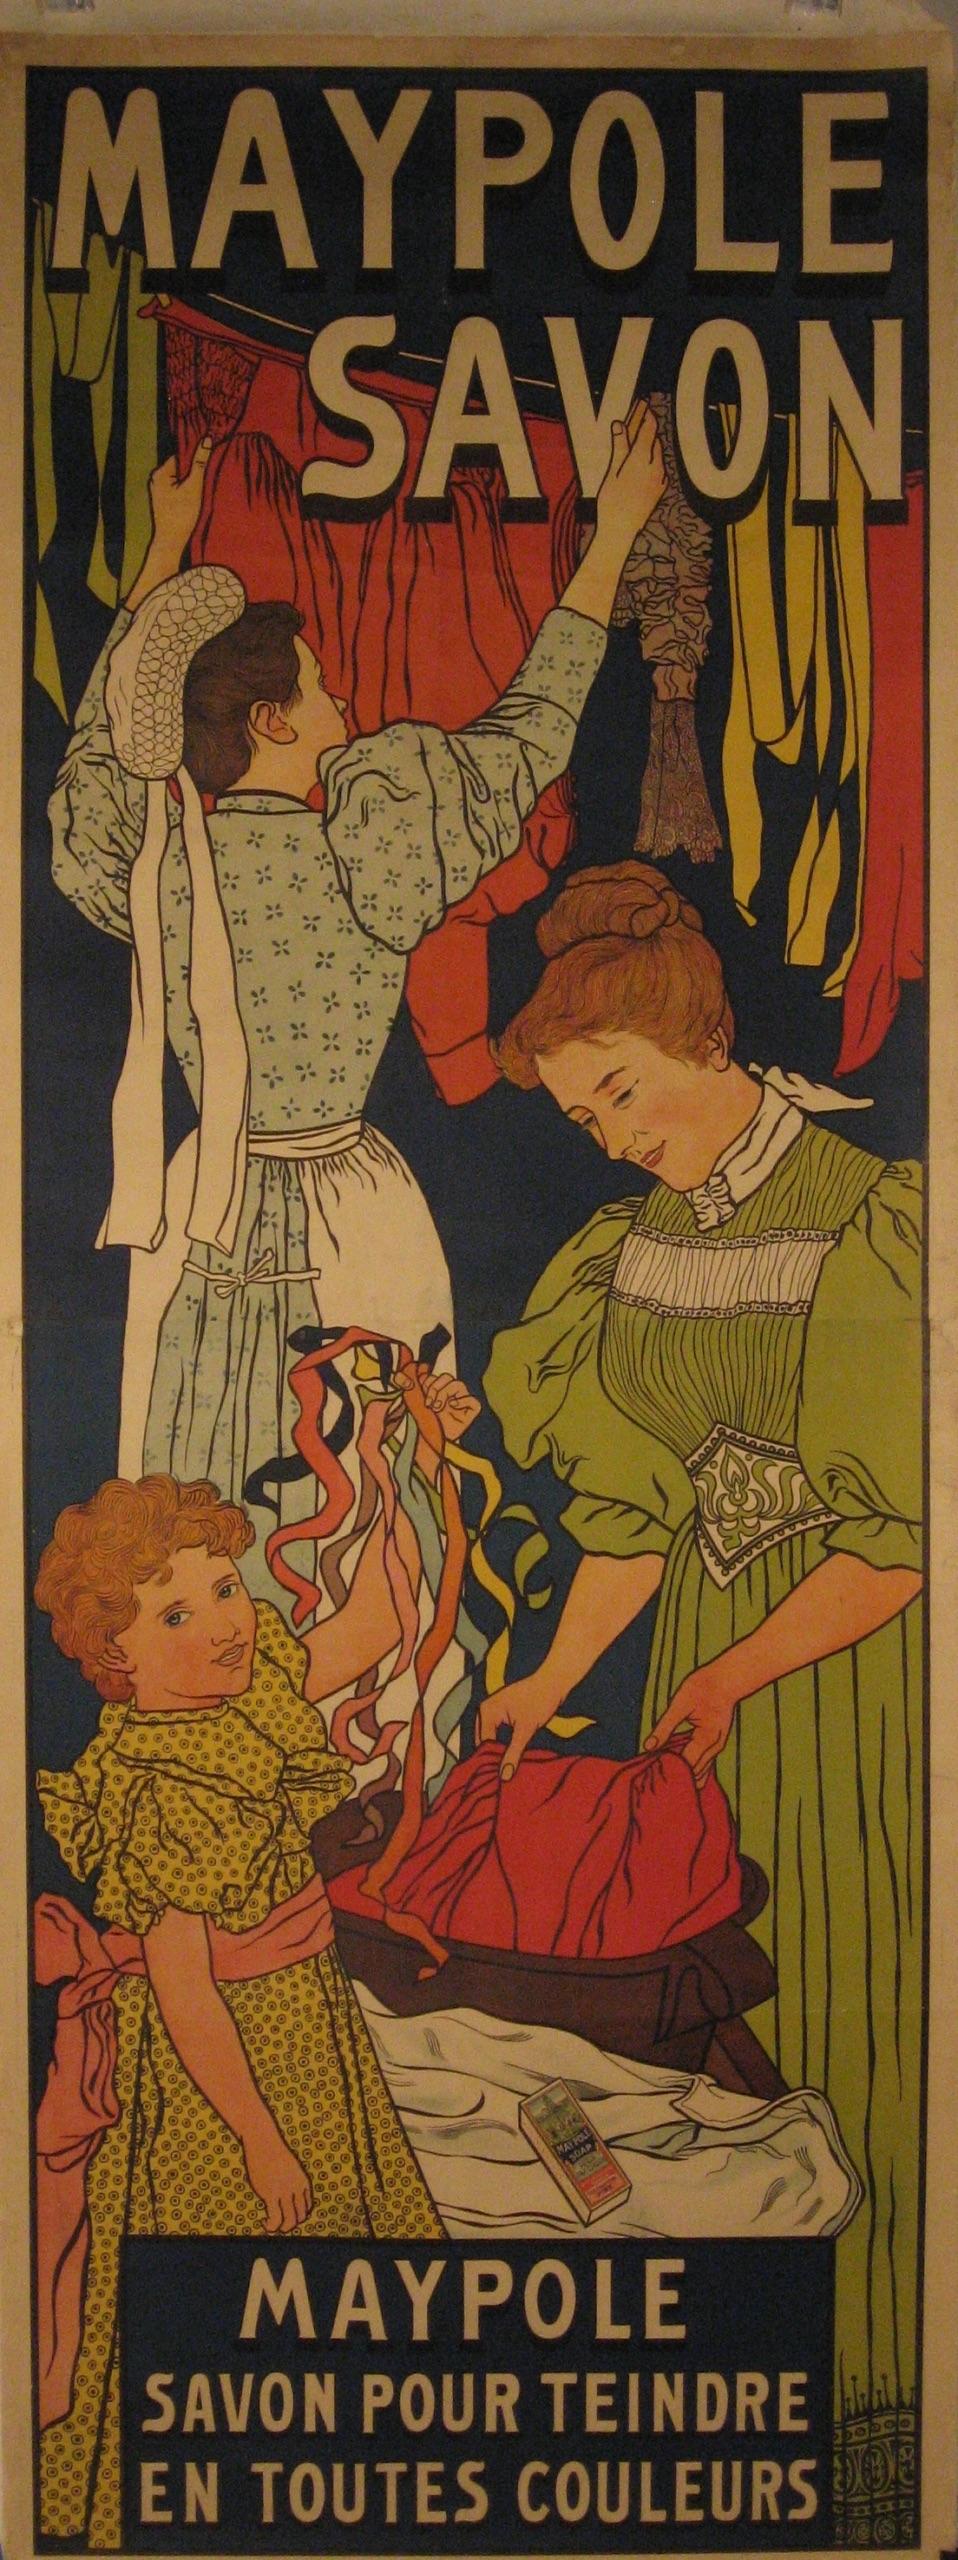 Künstler: Johann Georg van Caspel (Niederländer, 1870-1928)

Entstehungszeit: 1896

Medium: Original Offsetdruck  Lithographie Vintage By Poster

Größe: 30